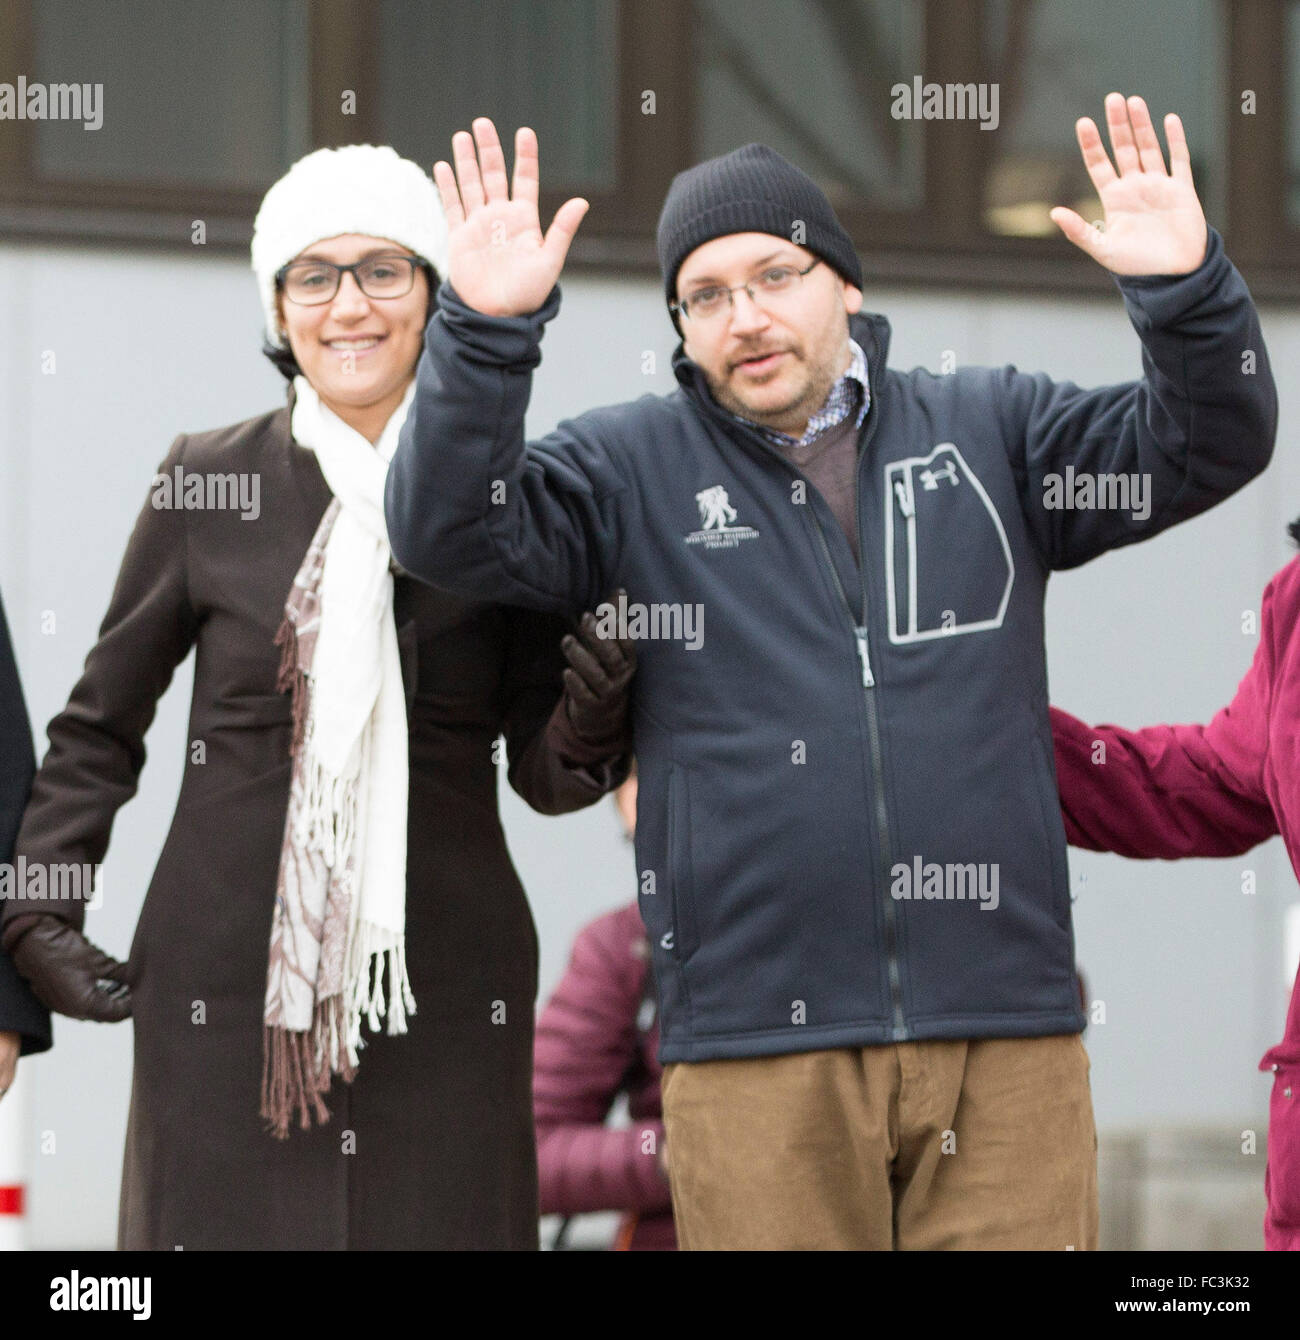 Landstuhl, Alemania. 20 ene, 2016. Liberado el periodista estadounidense Jason Rezaian stands junto con su esposa Yeganeh delante del hospital militar estadounidense en Landstuhl, Alemania, el 20 de enero de 2016. Foto: REINER VOSS/dpa/LRS/dpa/Alamy Live News Foto de stock